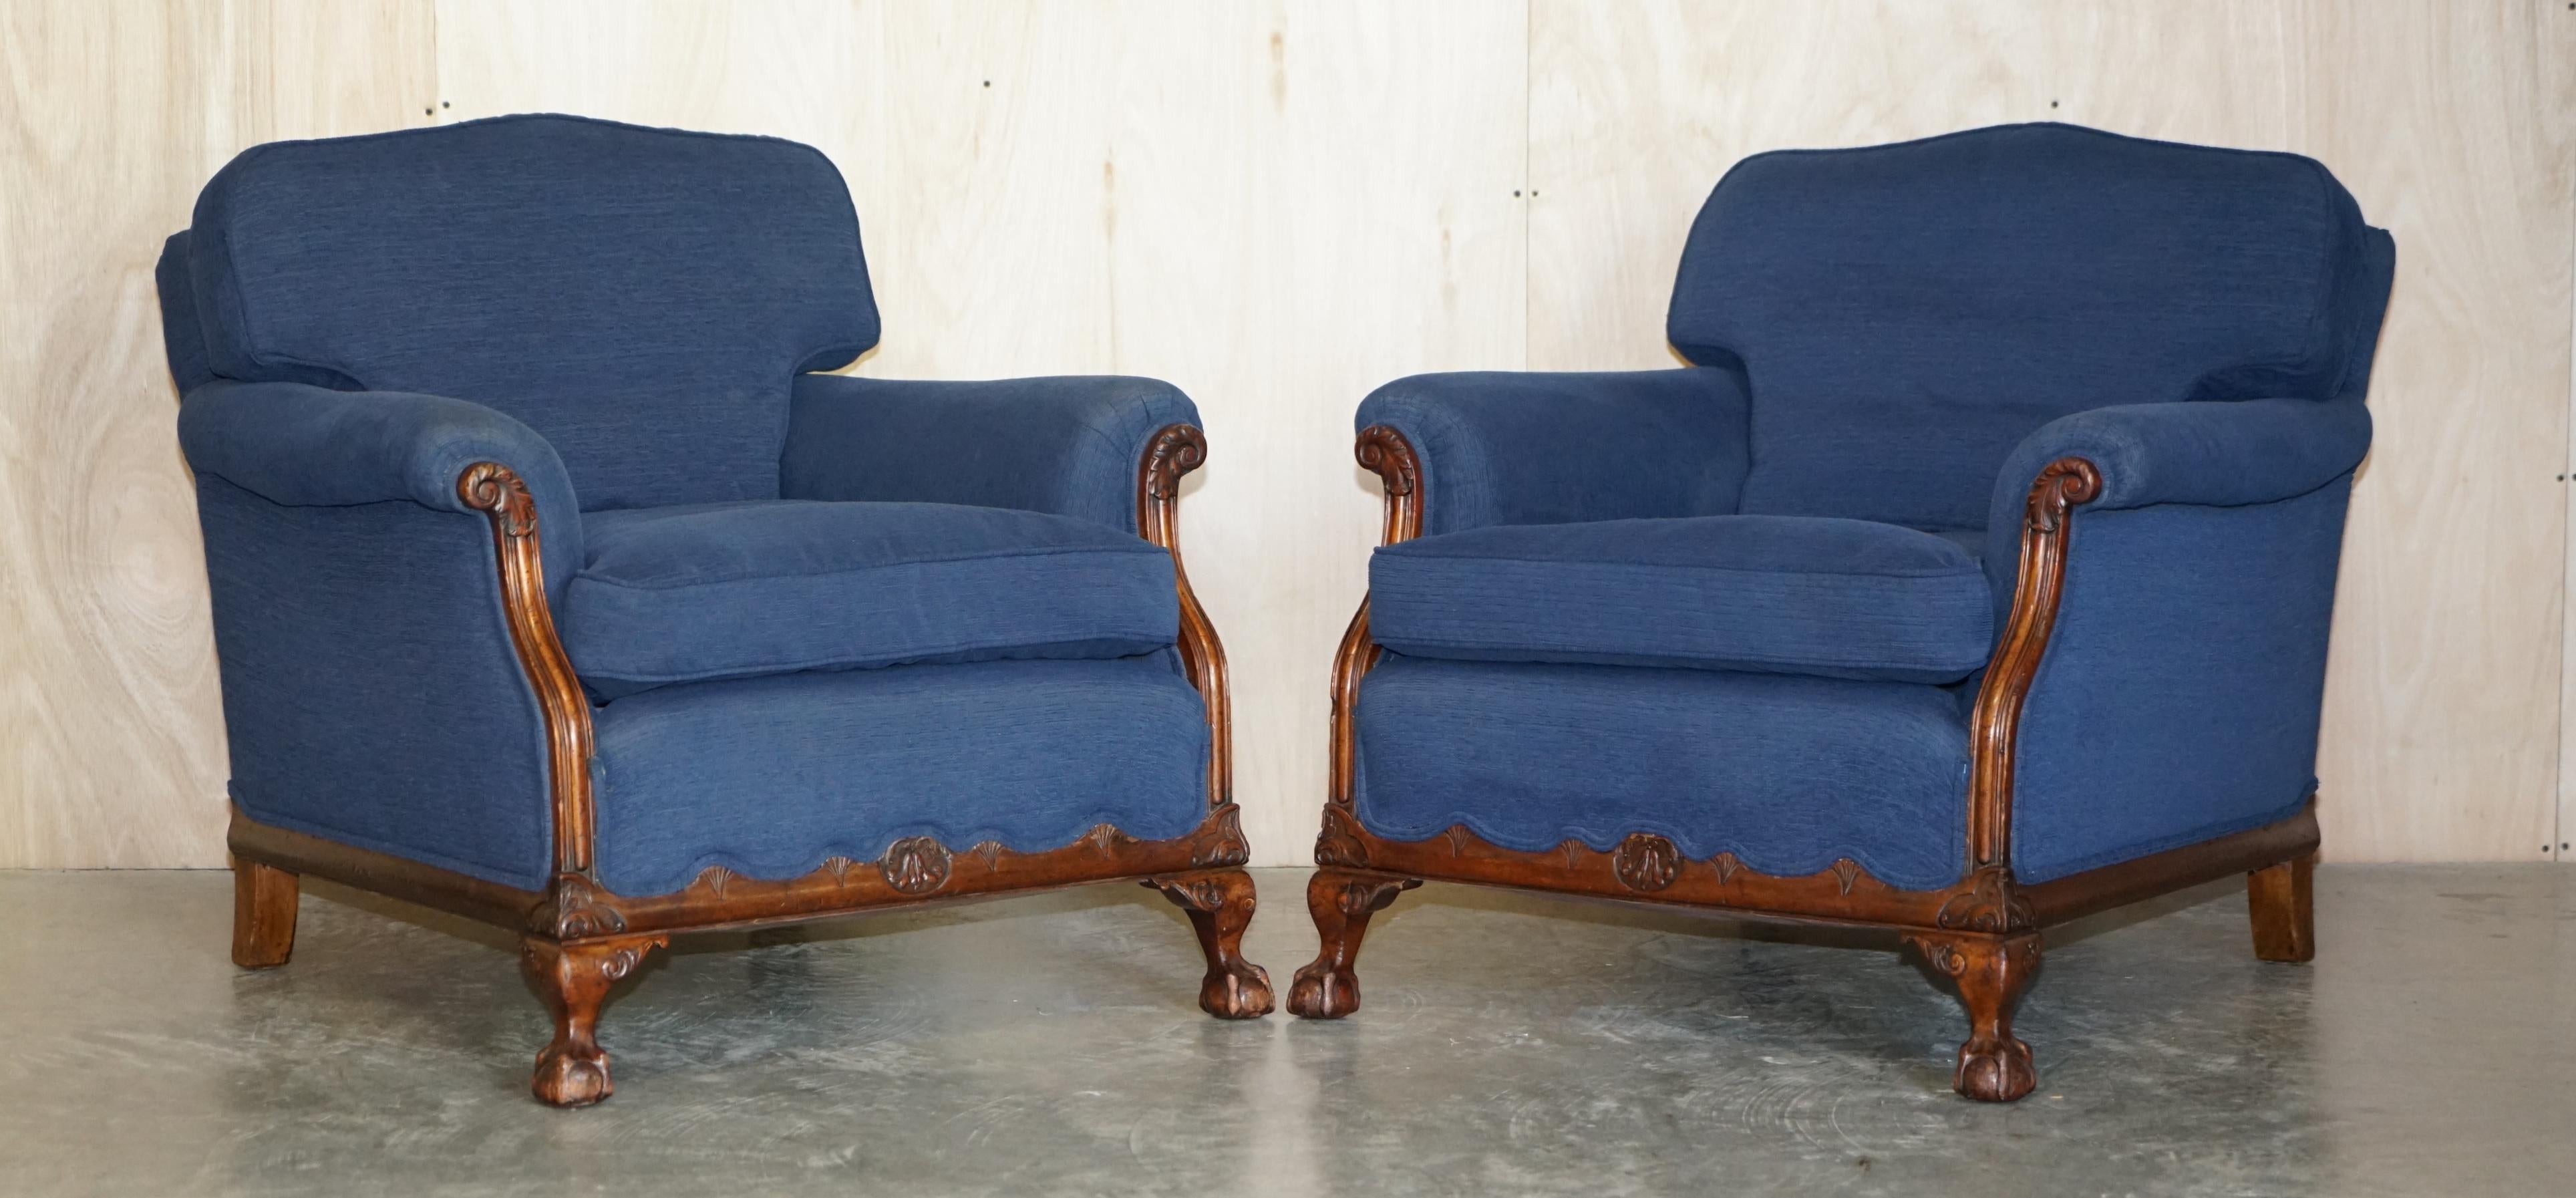 Wir freuen uns, dieses exquisite viktorianische, in Frankreich handgefertigte, nussbaumgerahmte und mit napoleonblauen Polstern versehene dreiteilige Sofa zum Verkauf anzubieten.

Eine sehr gut aussehende und gut gemachte Suite, der Rahmen hat